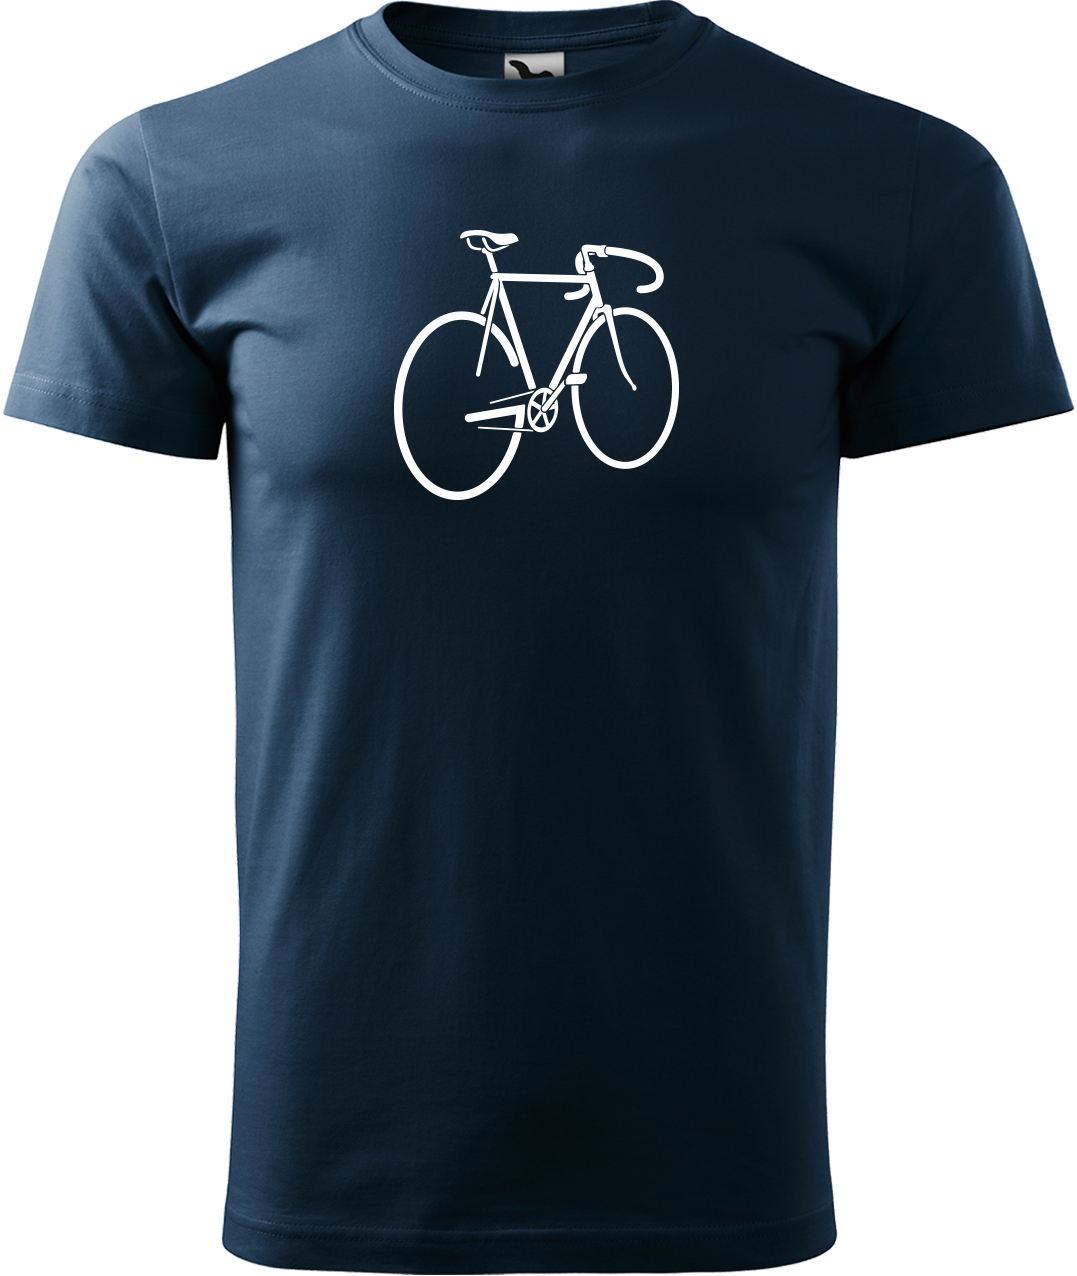 Pánské tričko s kolem - Pánské kolo Velikost: XL, Barva: Námořní modrá (02)